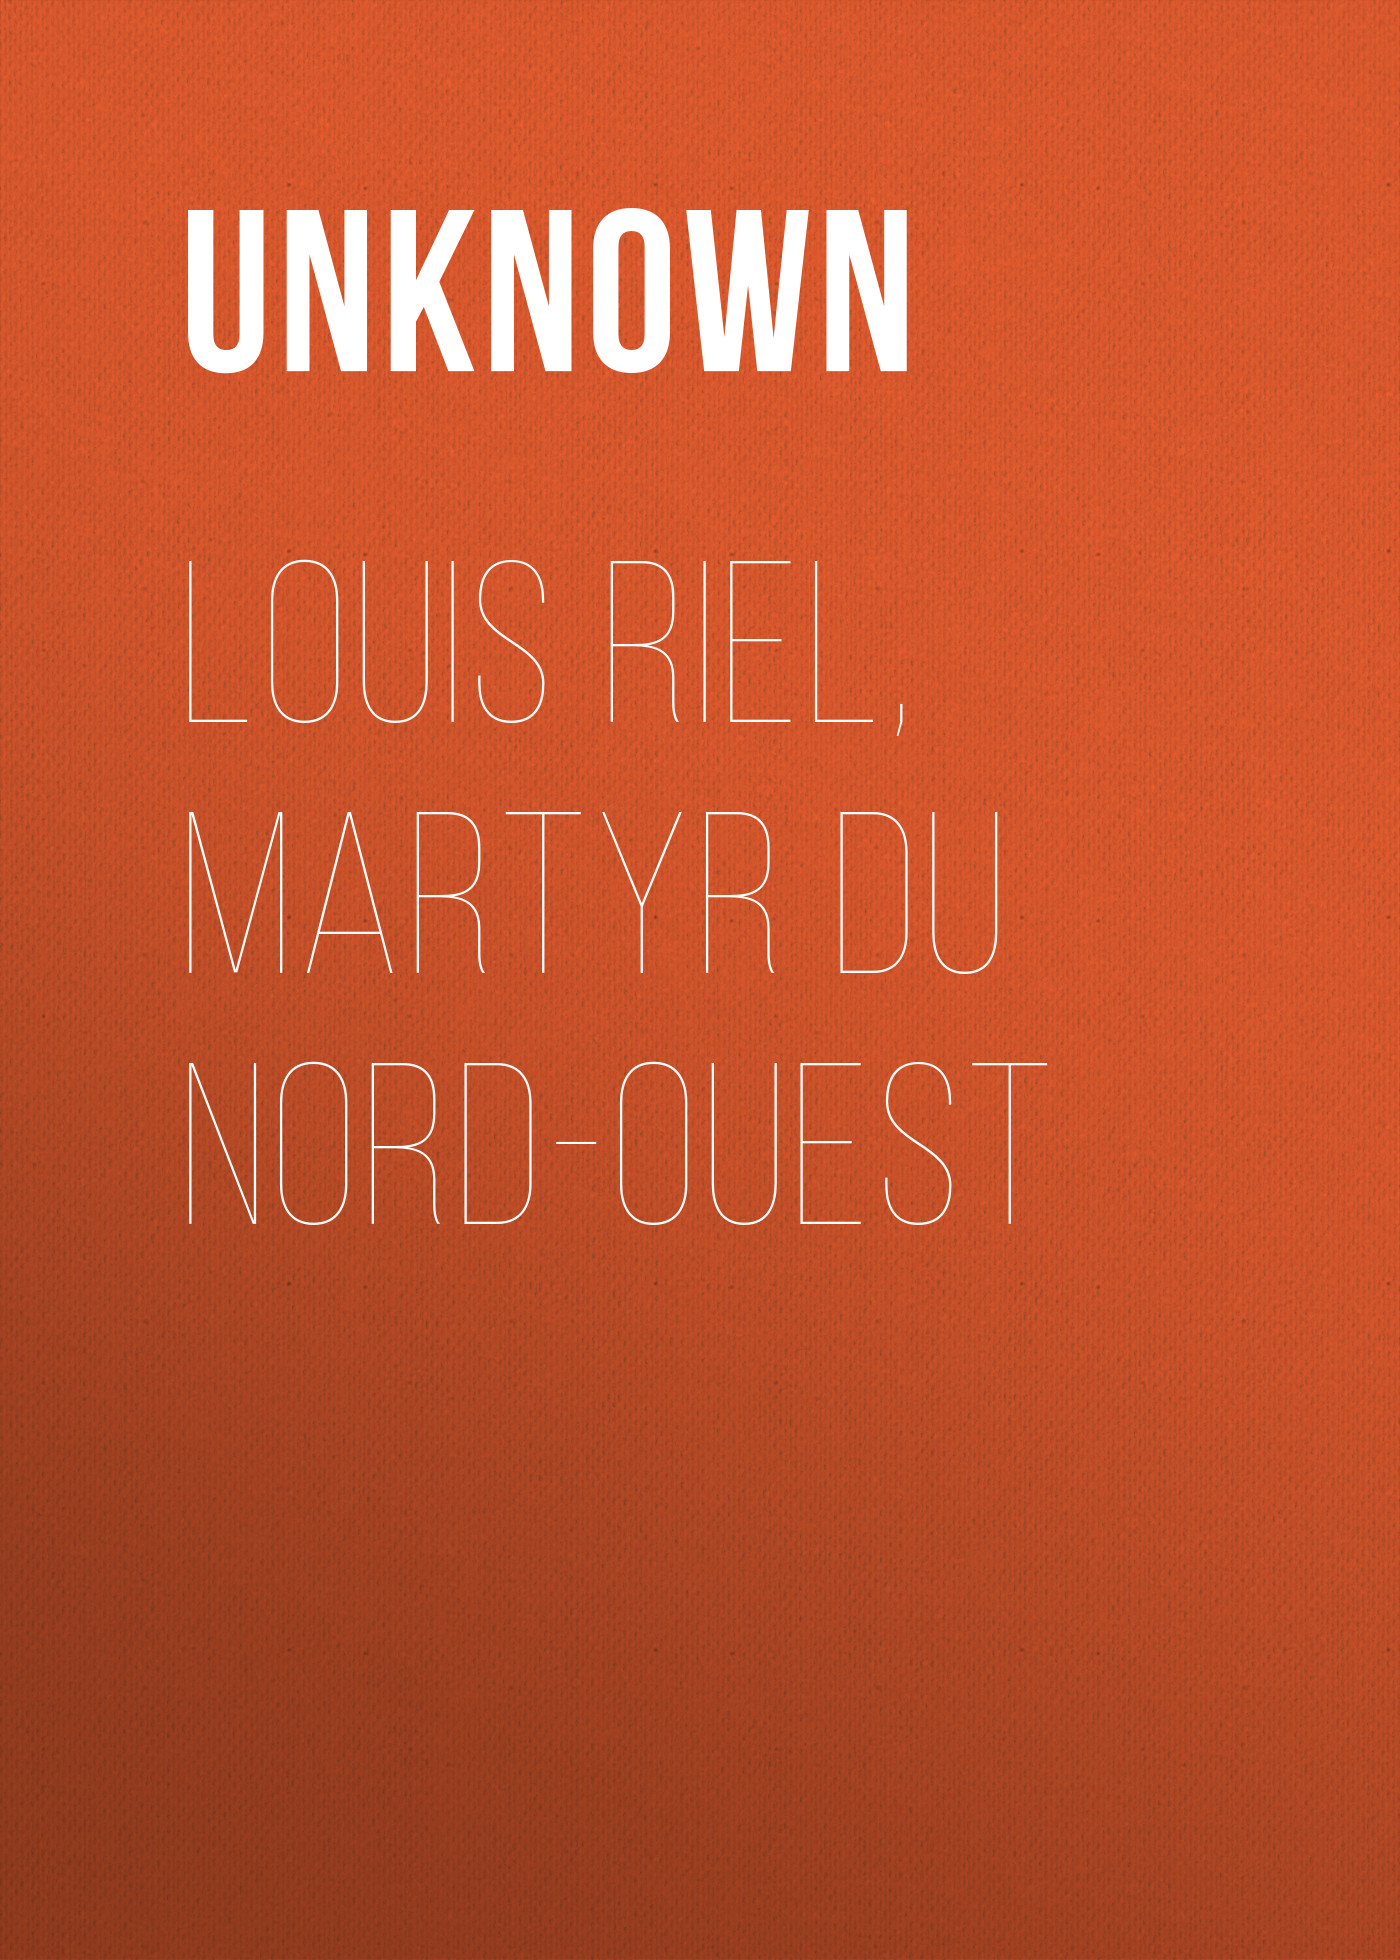 Unknown Louis Riel, Martyr du Nord-Ouest